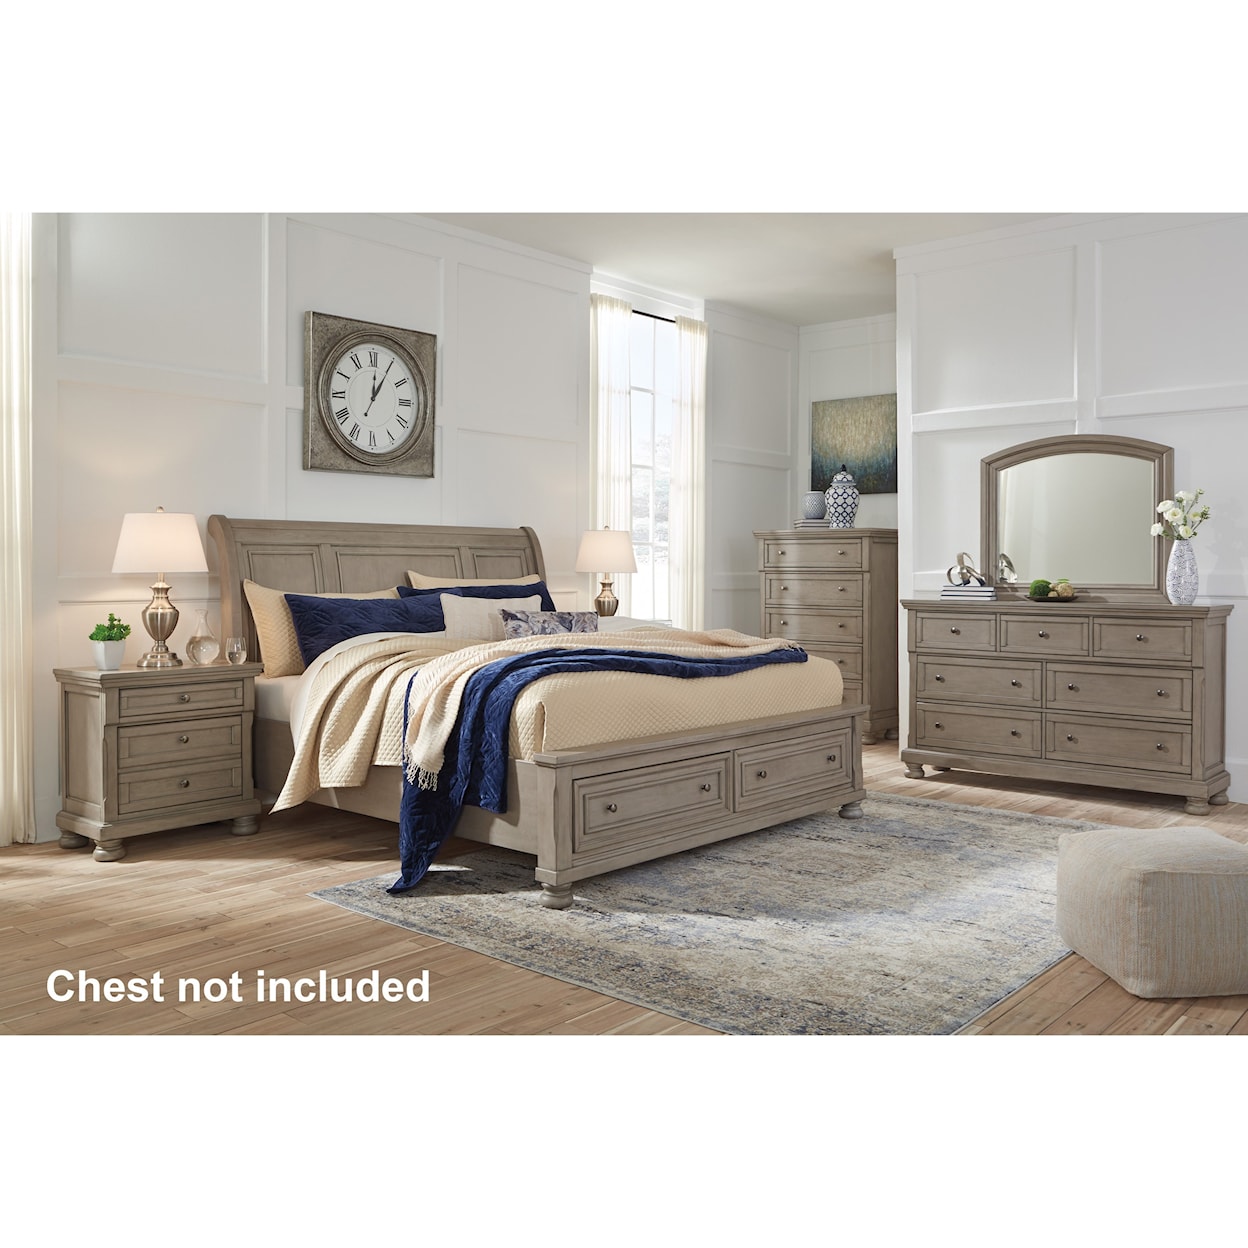 Ashley Furniture Signature Design Lettner King Bedroom Group